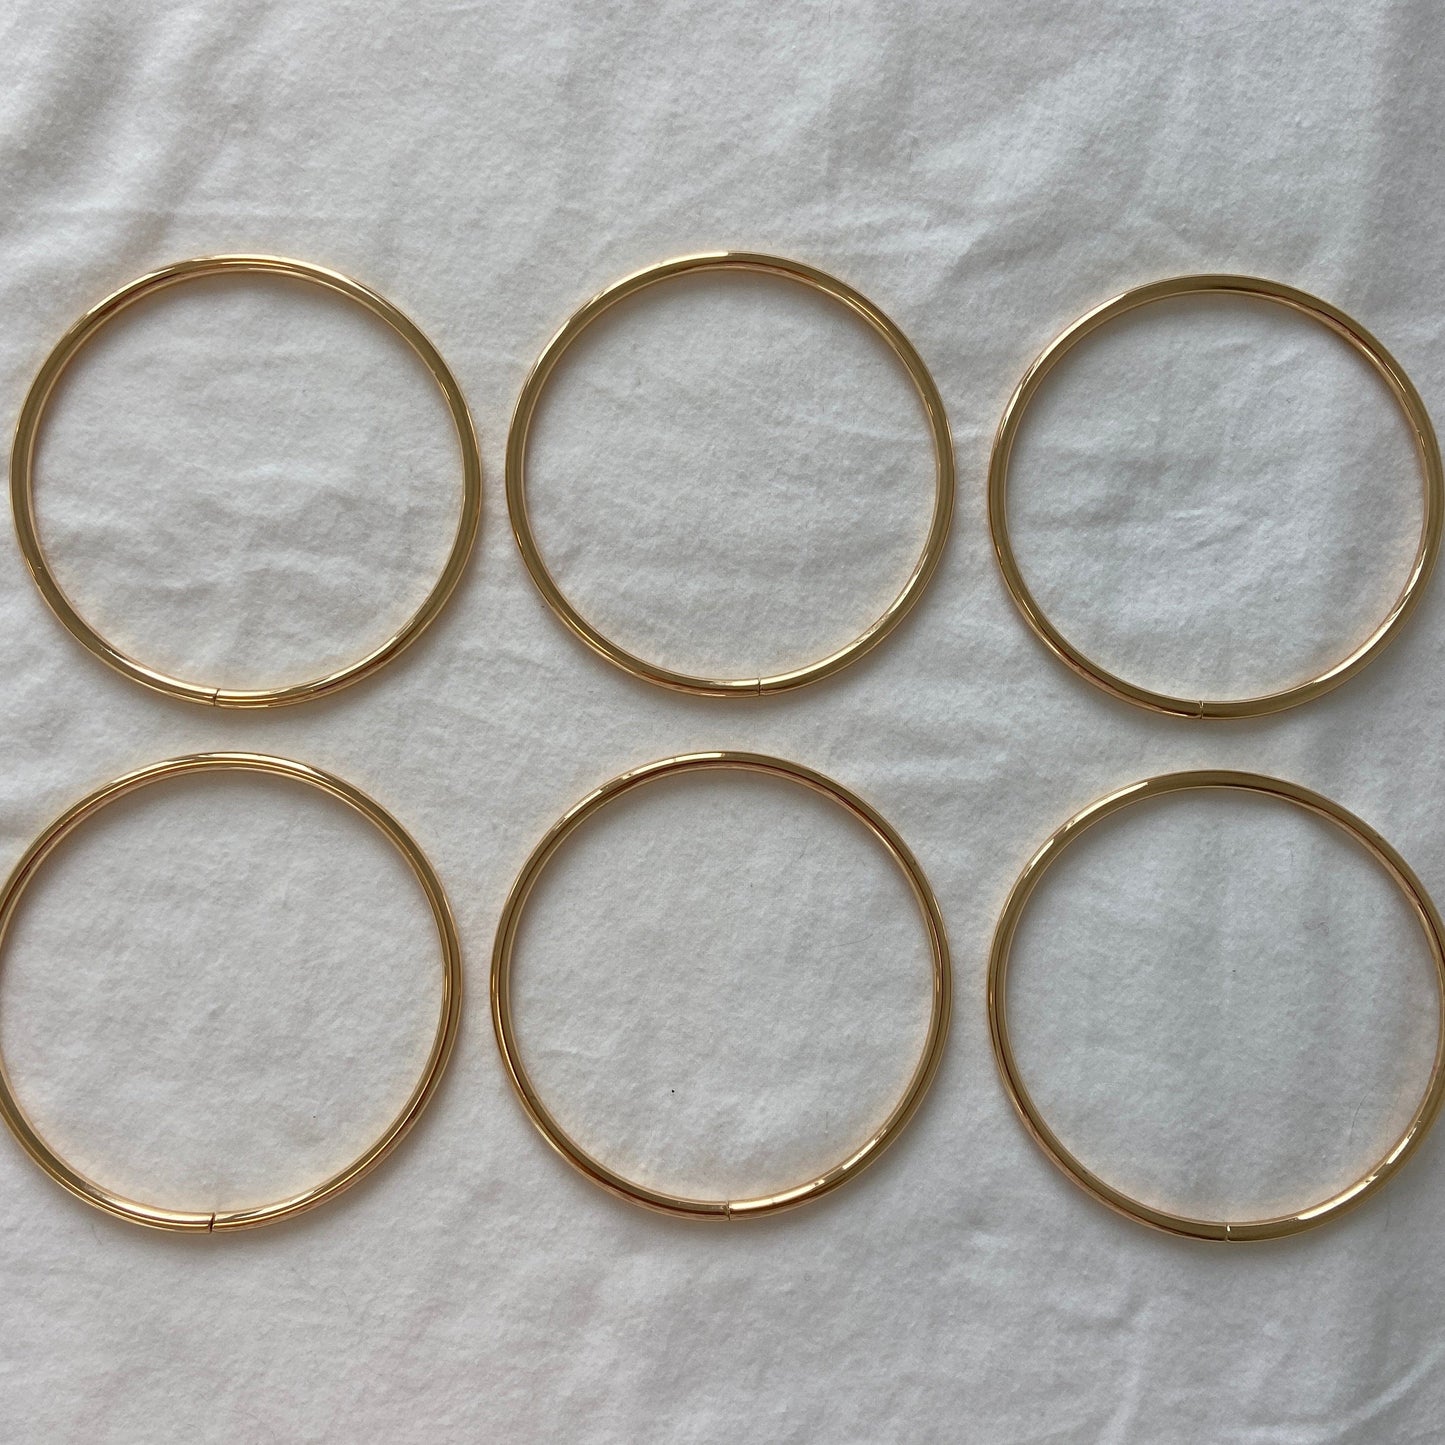 Flora Street Atelier Bag Hardware Metal Ring Bag Handles 6pcs (Gold) | DIY Bag Hardware